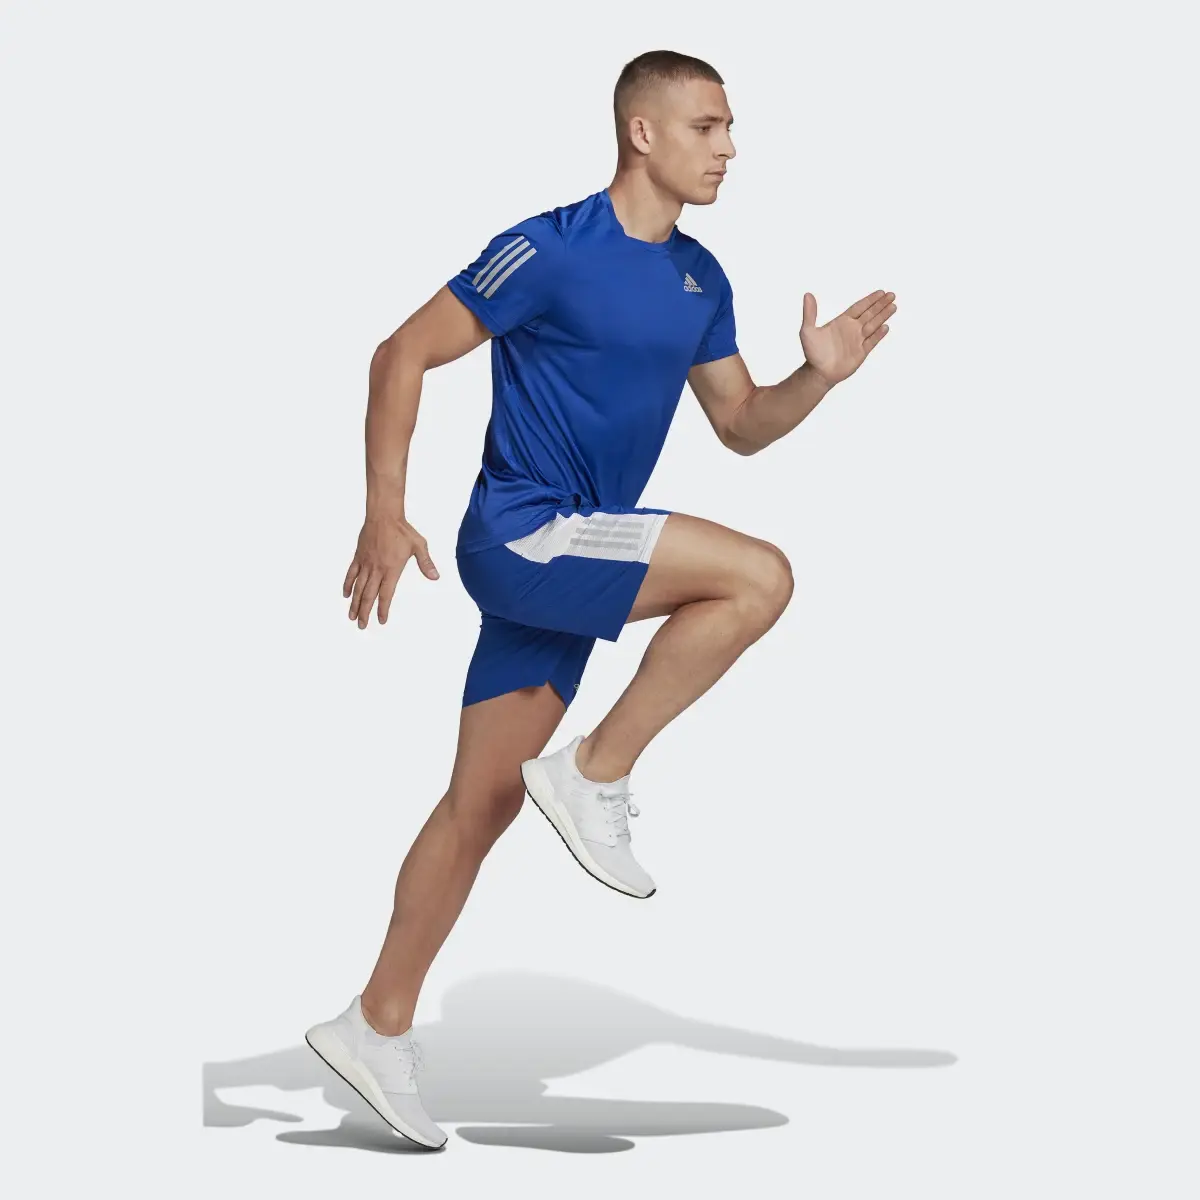 Adidas Shorts Own the Run. 3